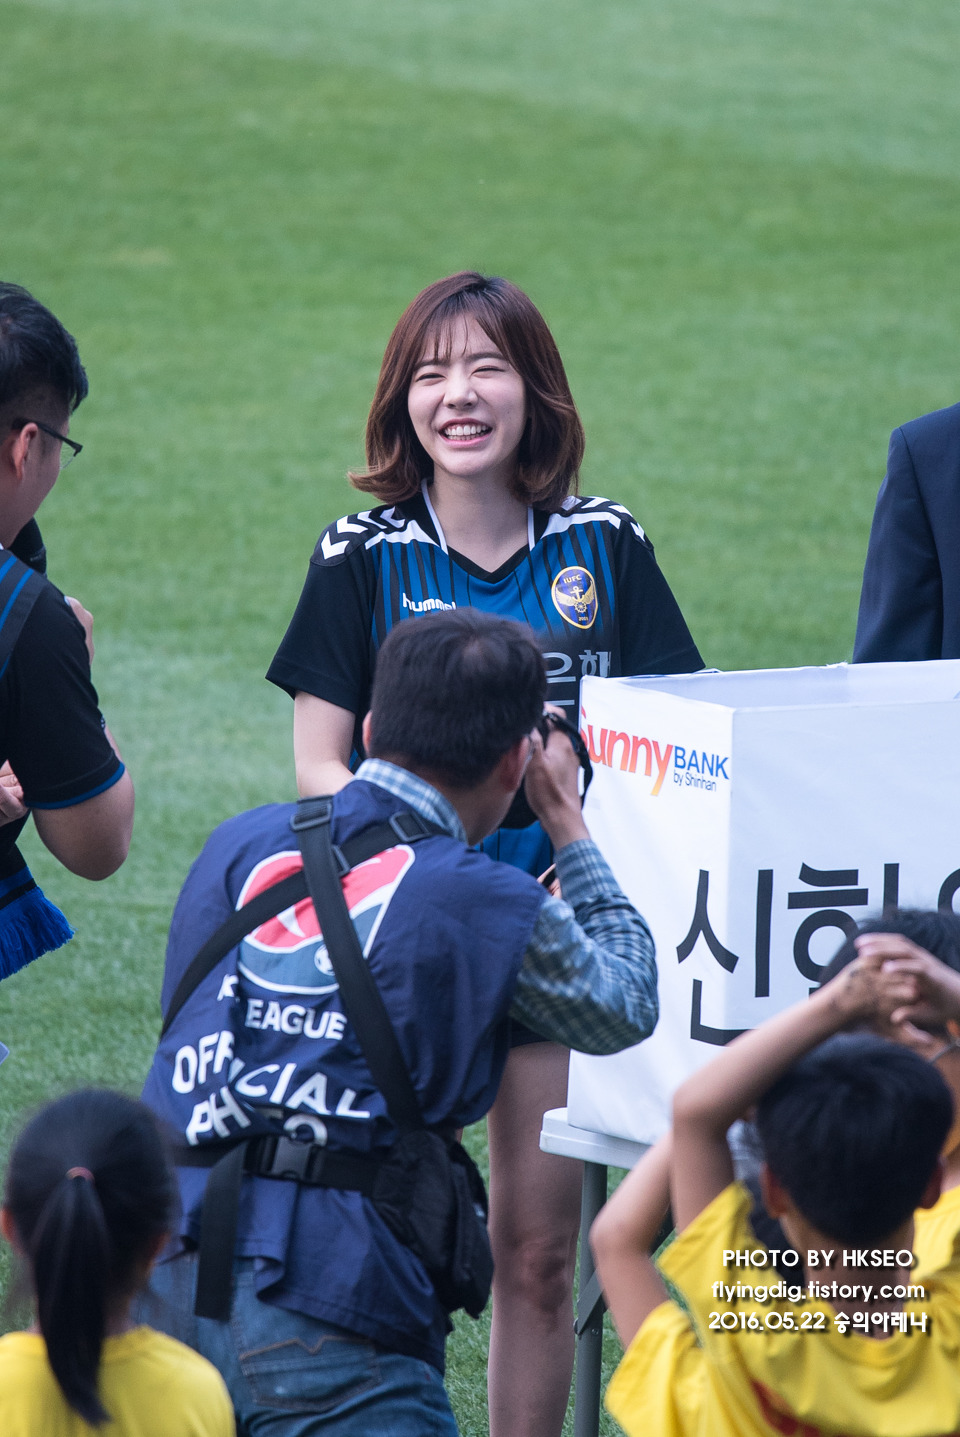 [PIC][22-05-2016]Sunny tham dự sự kiện "Shinhan Bank Vietnam & Korea Festival"  tại SVĐ Incheon Football Stadium vào hôm nay 2402D23A5741B31C1ECB96